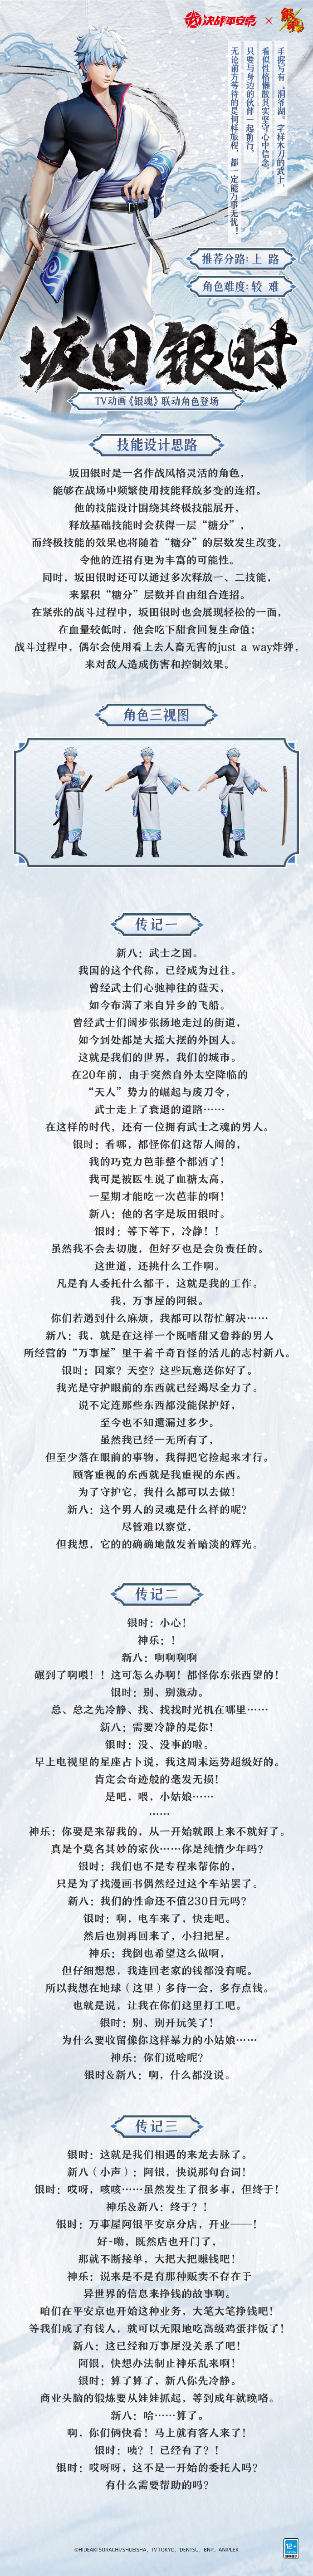 《决战平安京》x《银魂》联动角色「坂田银时」的故事